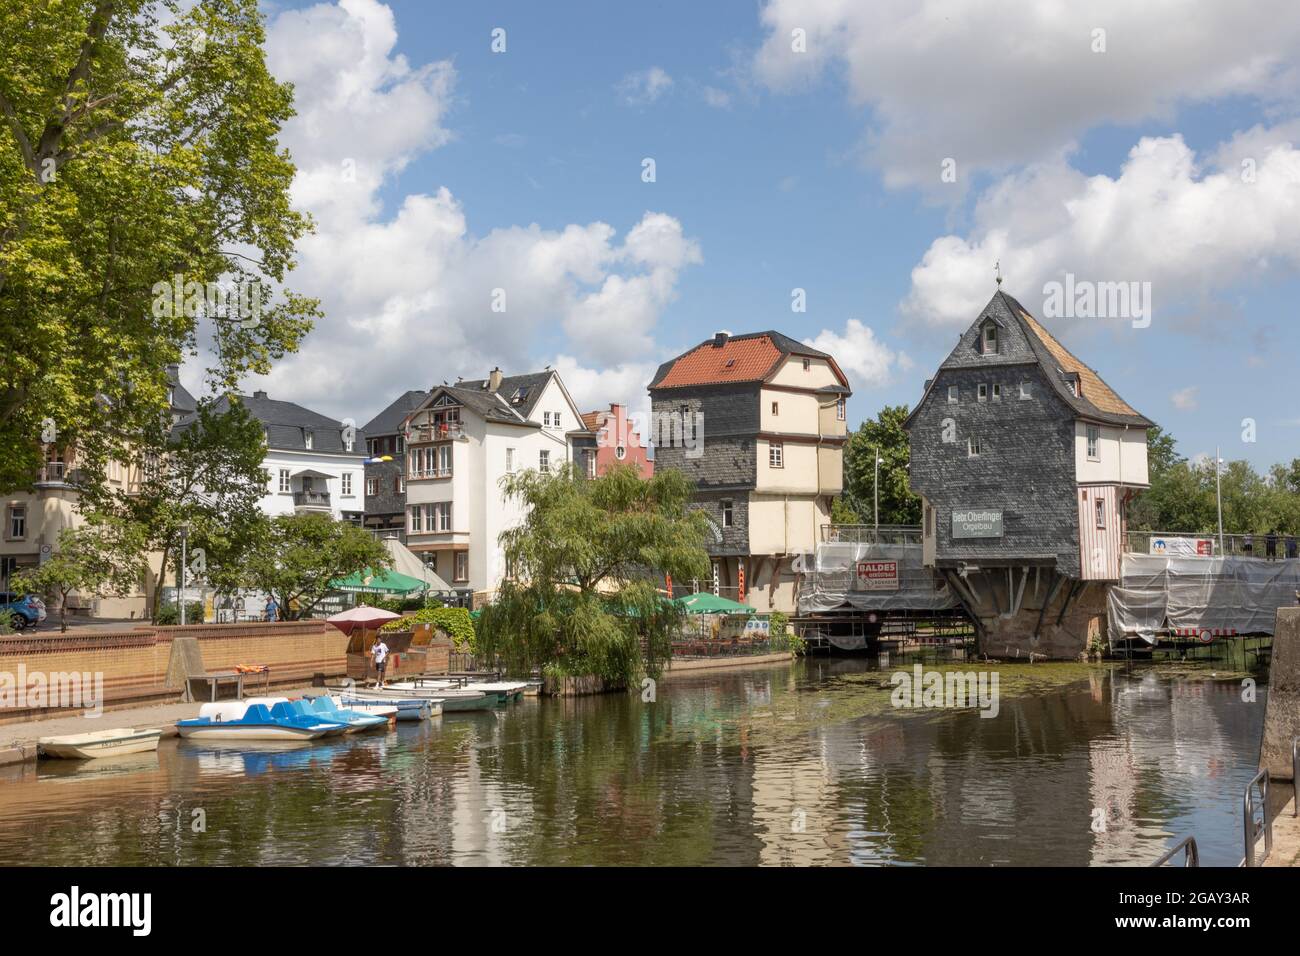 Bridge houses on the Old Nahe Bridge in Bad Kreuznach, Rhineland-Palatinate, Germany. Stock Photo